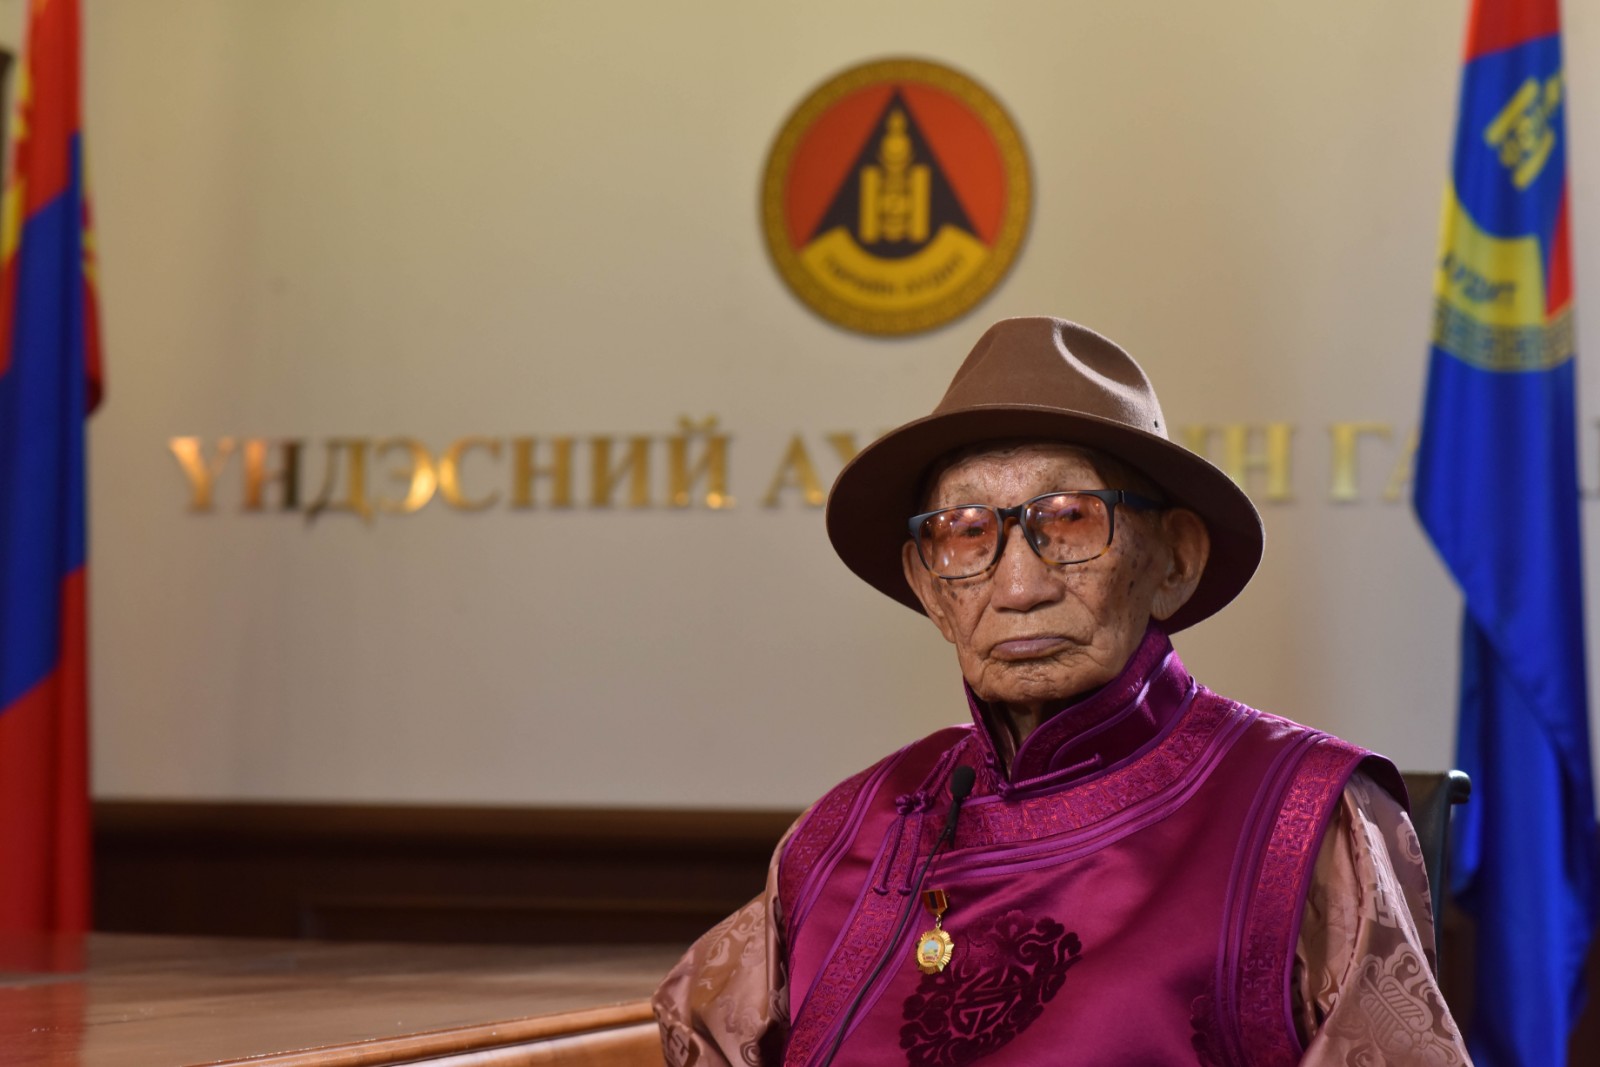 Төрийн аудитын байгууллагын удирдлагууд  100 настай Ч.Намдаг гуайг хүлээн авч хүндэтгэл үзүүллээ